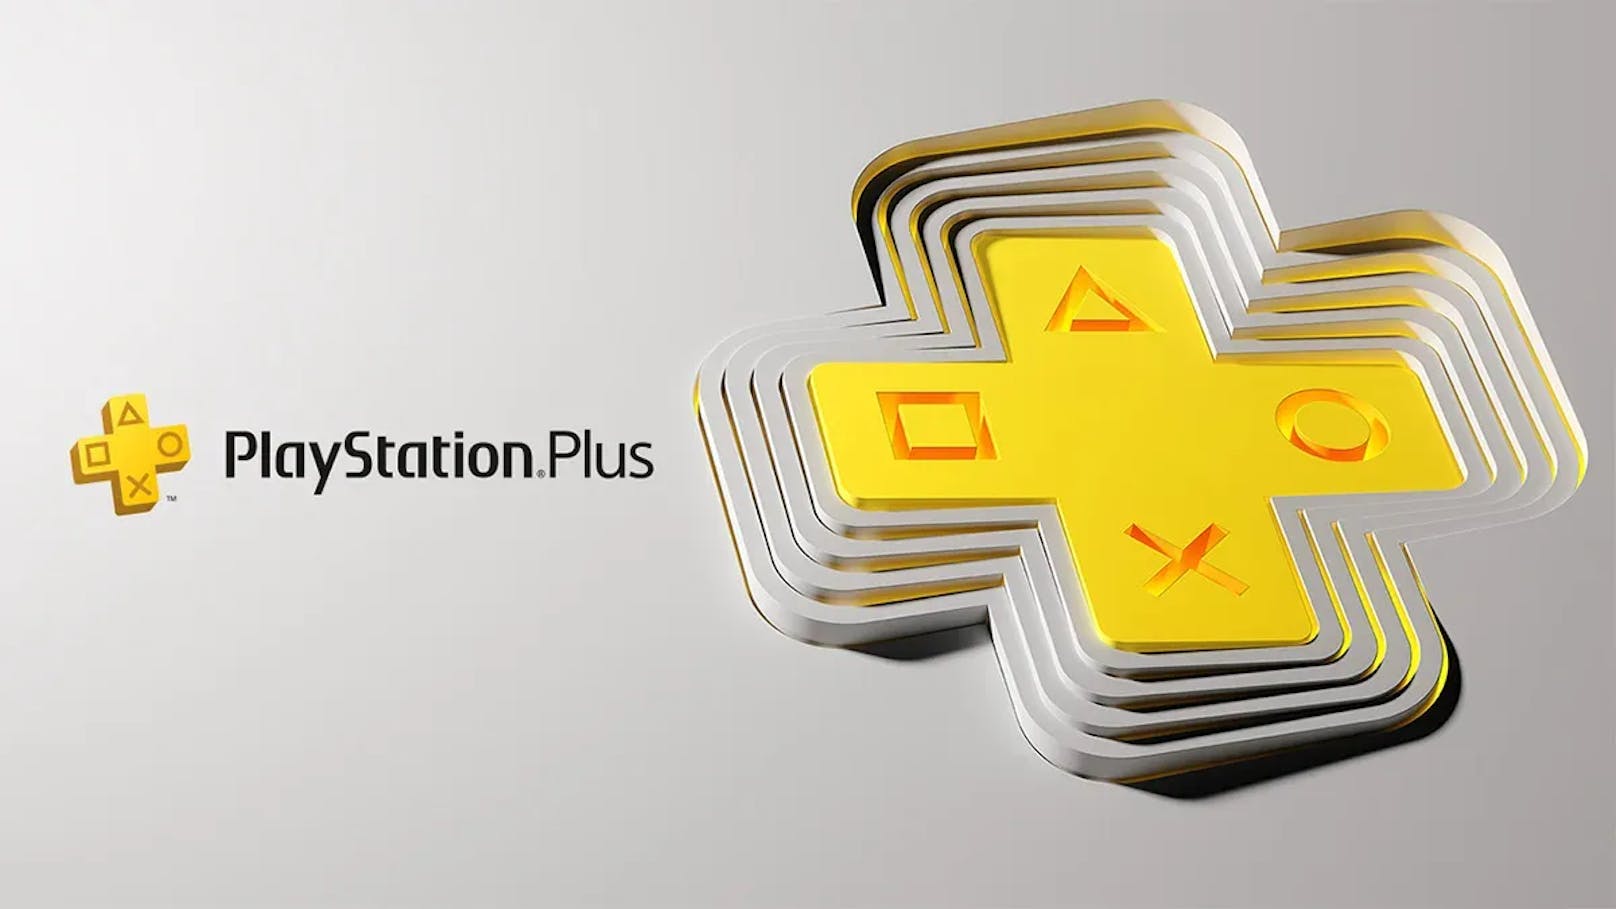 Lange wurde gerätselt, nun ist das neue PlayStation Plus da. <em>"Heute"</em> hat das neue Gaming-Abo getestet.